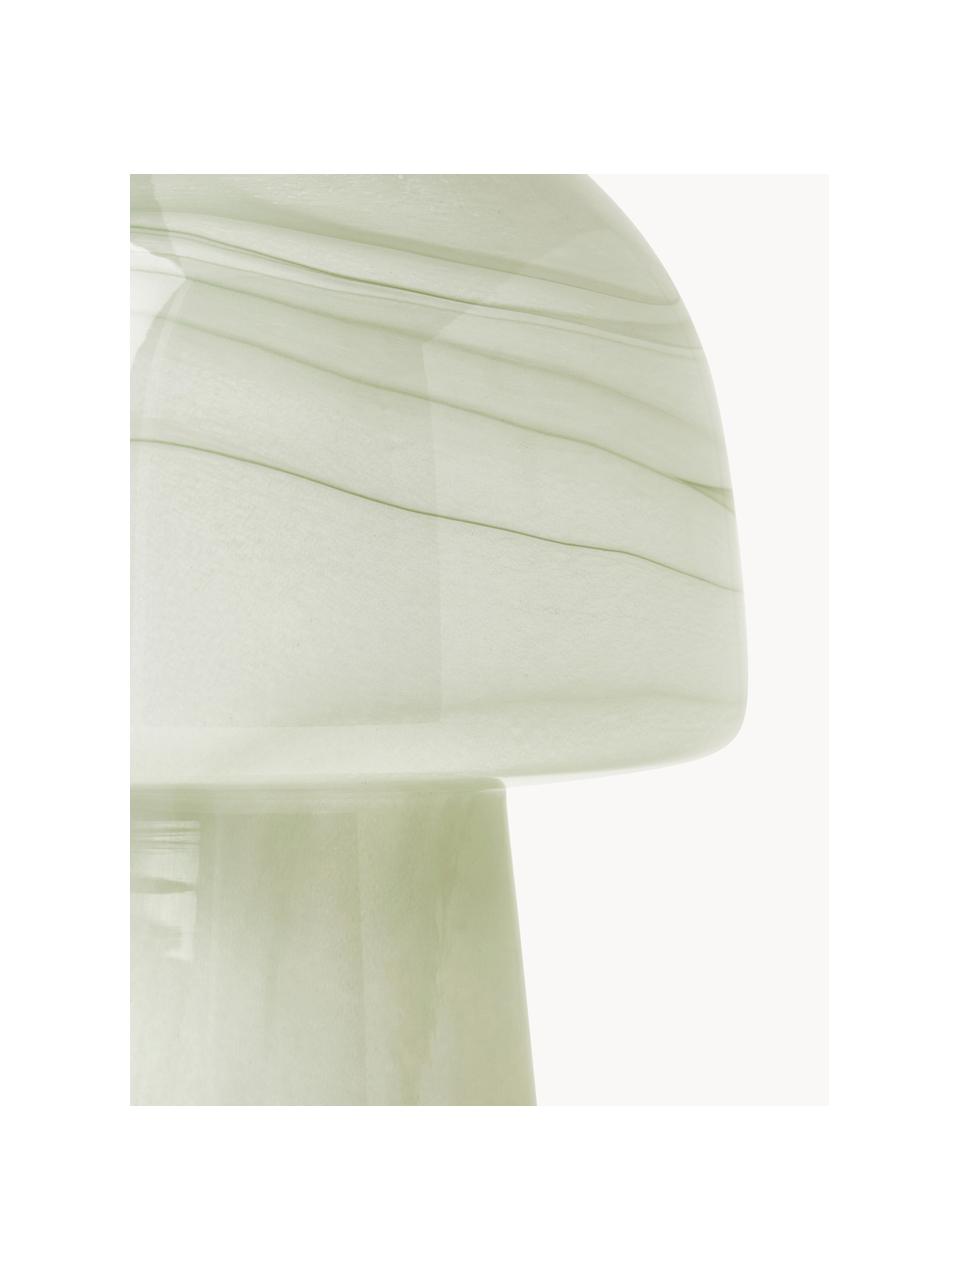 Lampa stołowa Talia, Oliwkowy zielony, o wyglądzie marmuru, Ø 20 x W 26 cm